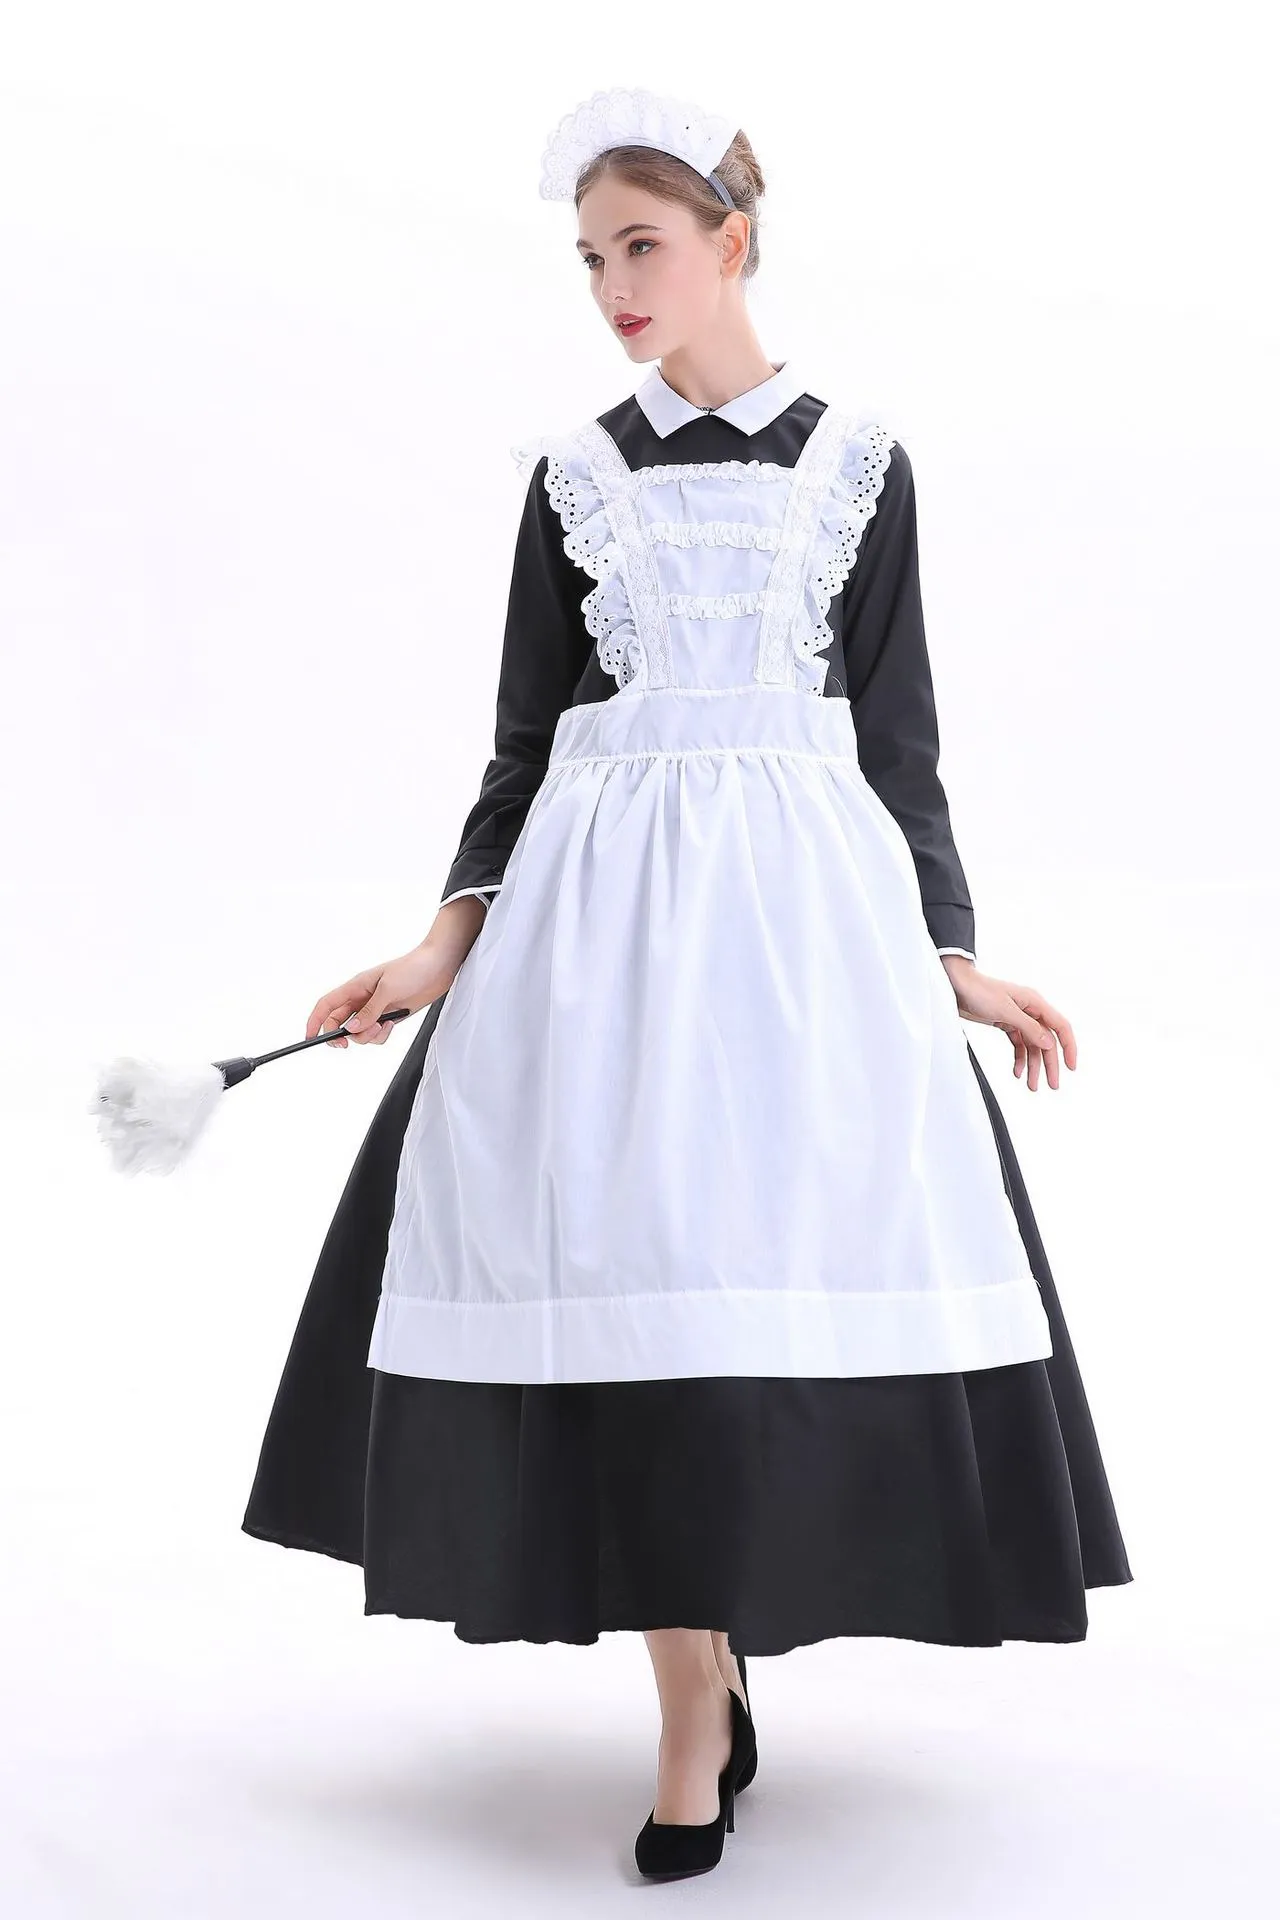 cosplay Franse landhuis meid kostuum roljurk Volwassen Victoriaanse meid arme boer dienaar Fancy Dress Franse Wench Manor Maid Costume239c